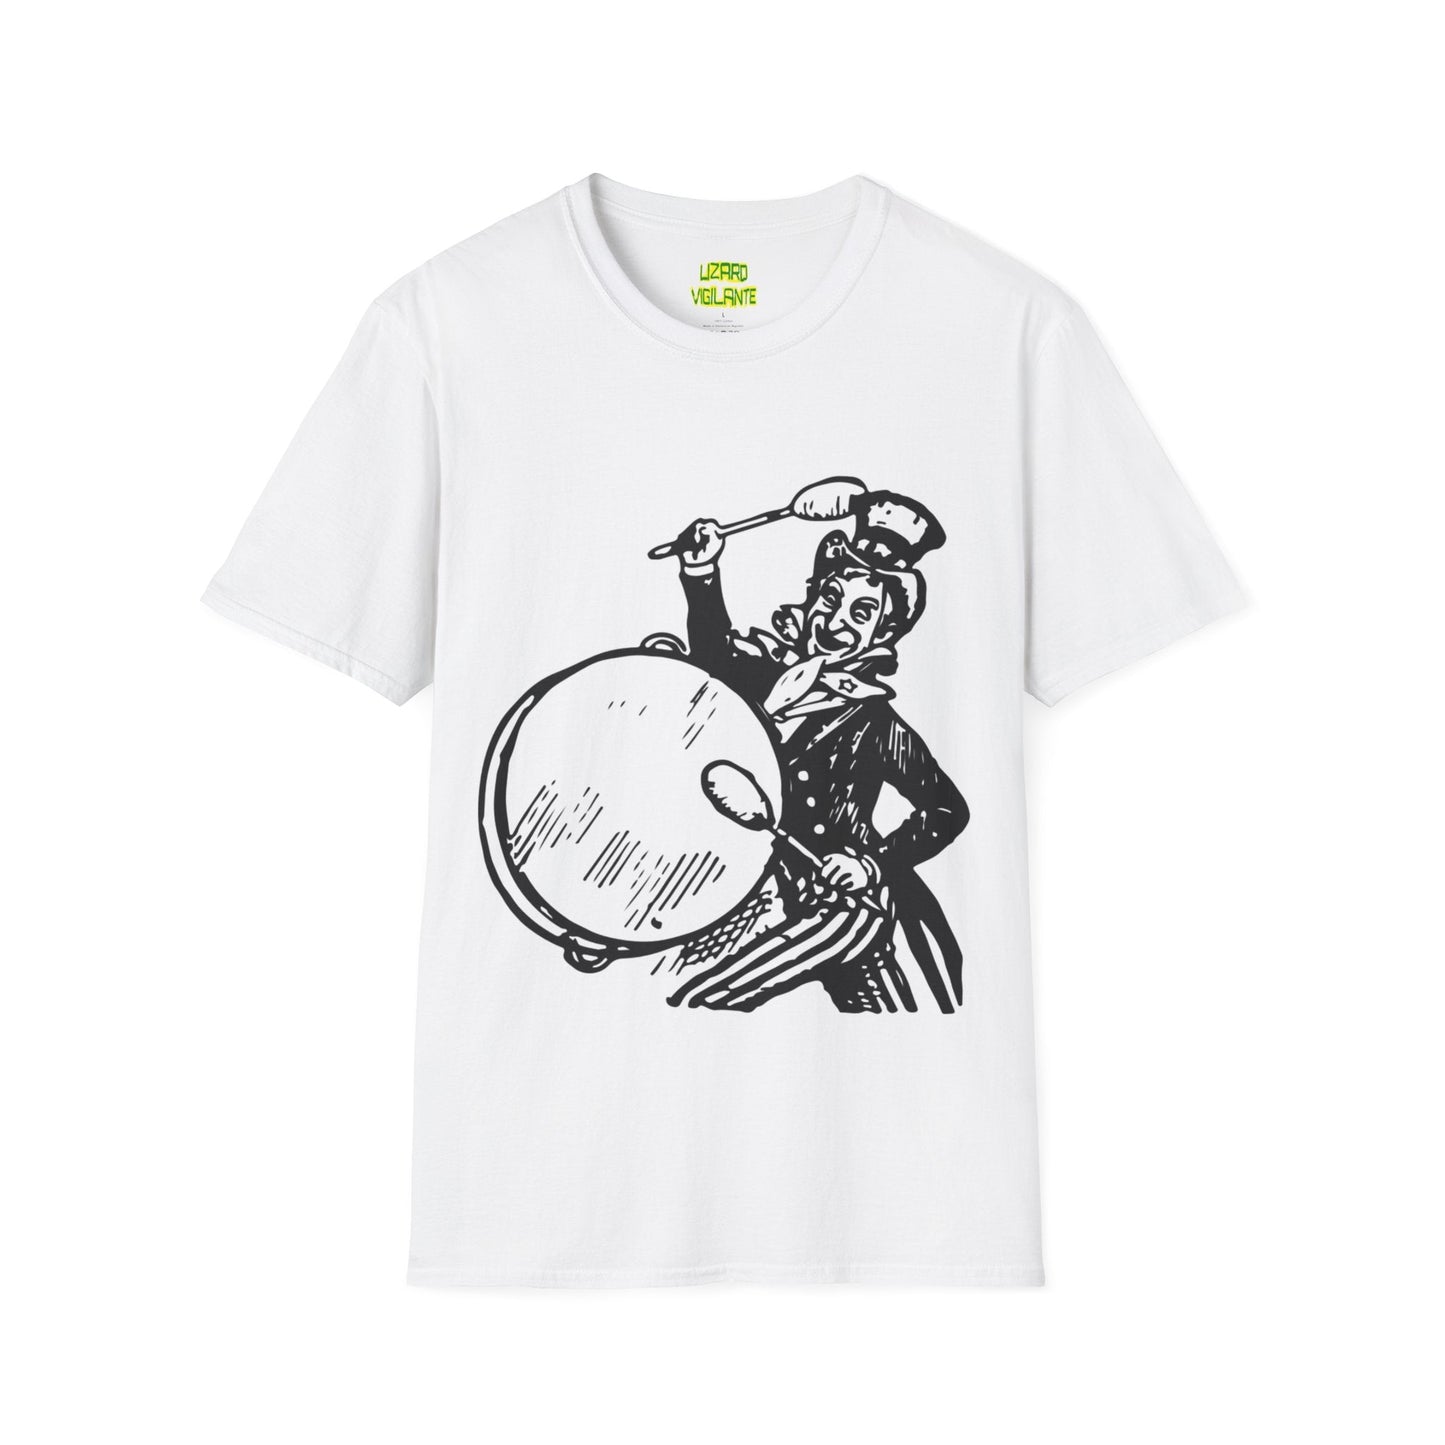 Uncle Sam Drums Unisex Softstyle T-Shirt, White - Lizard Vigilante